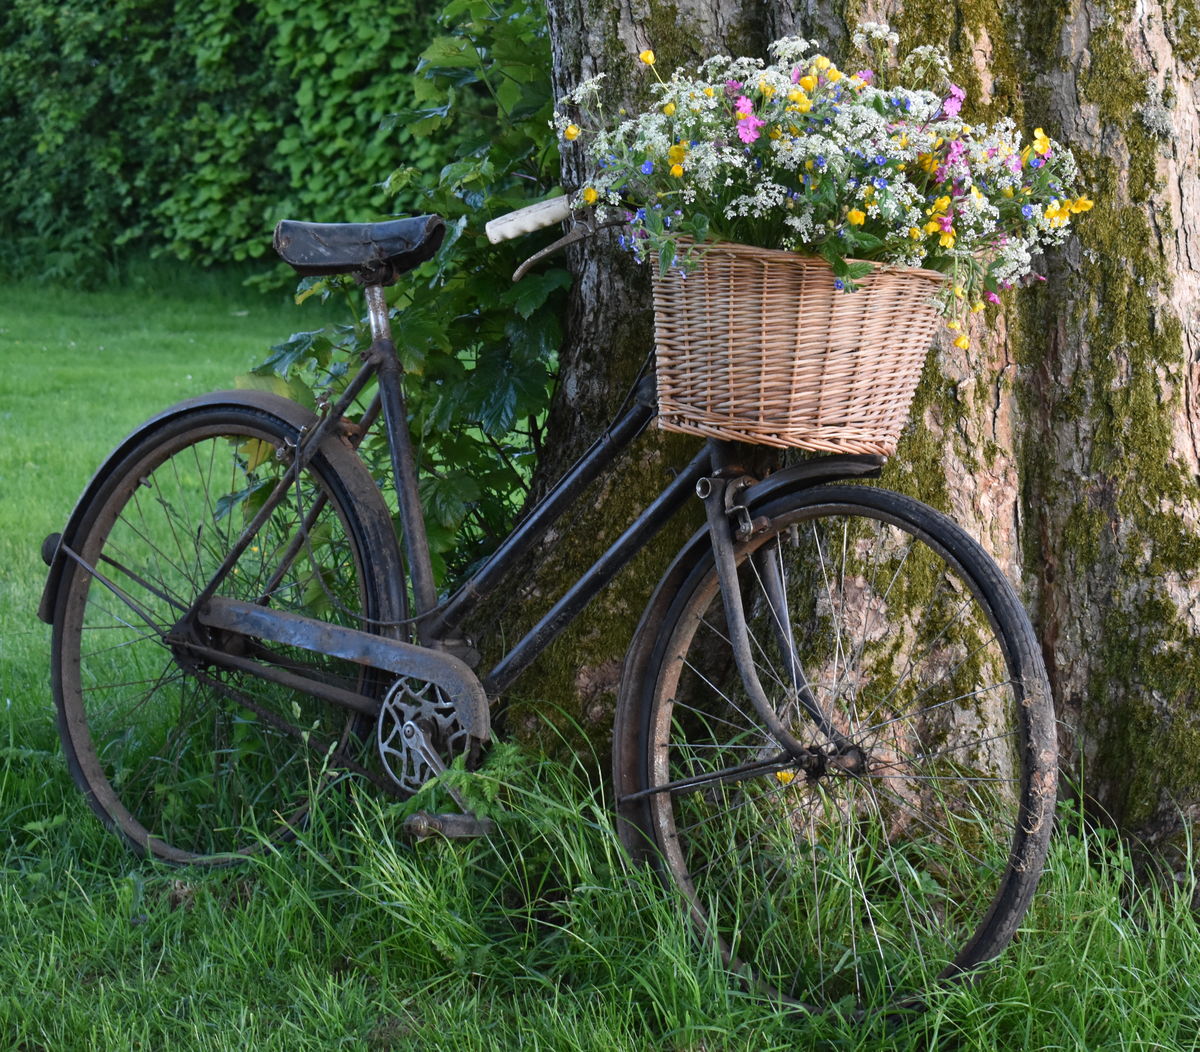 The Moorhouse wild-flowers-bicycle-basket.jpg